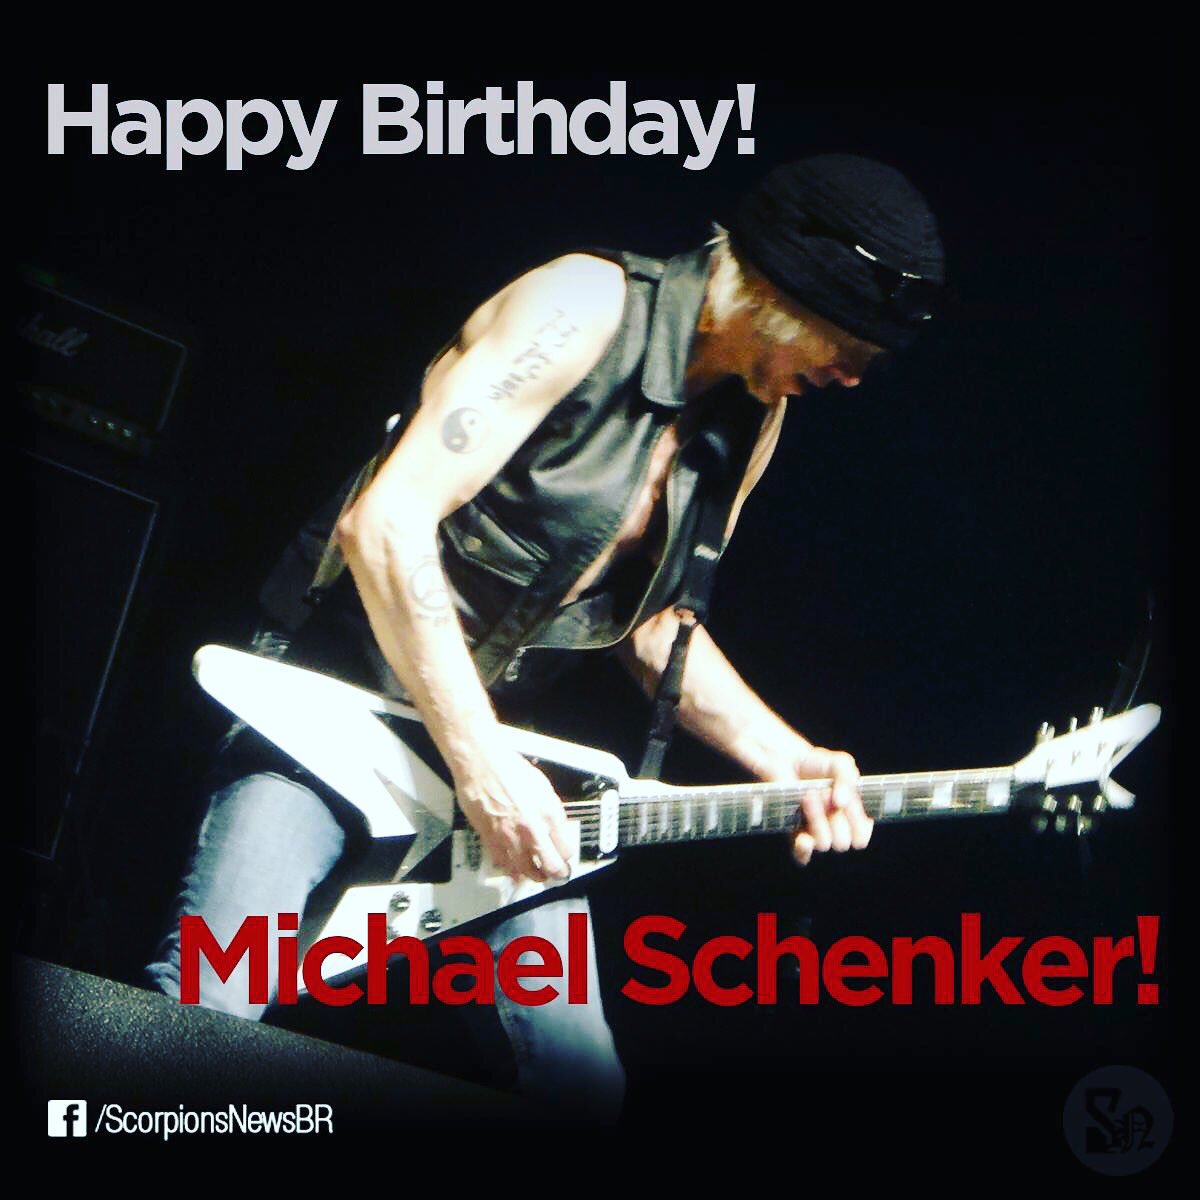 Happy Birthday Michael Schenker! 